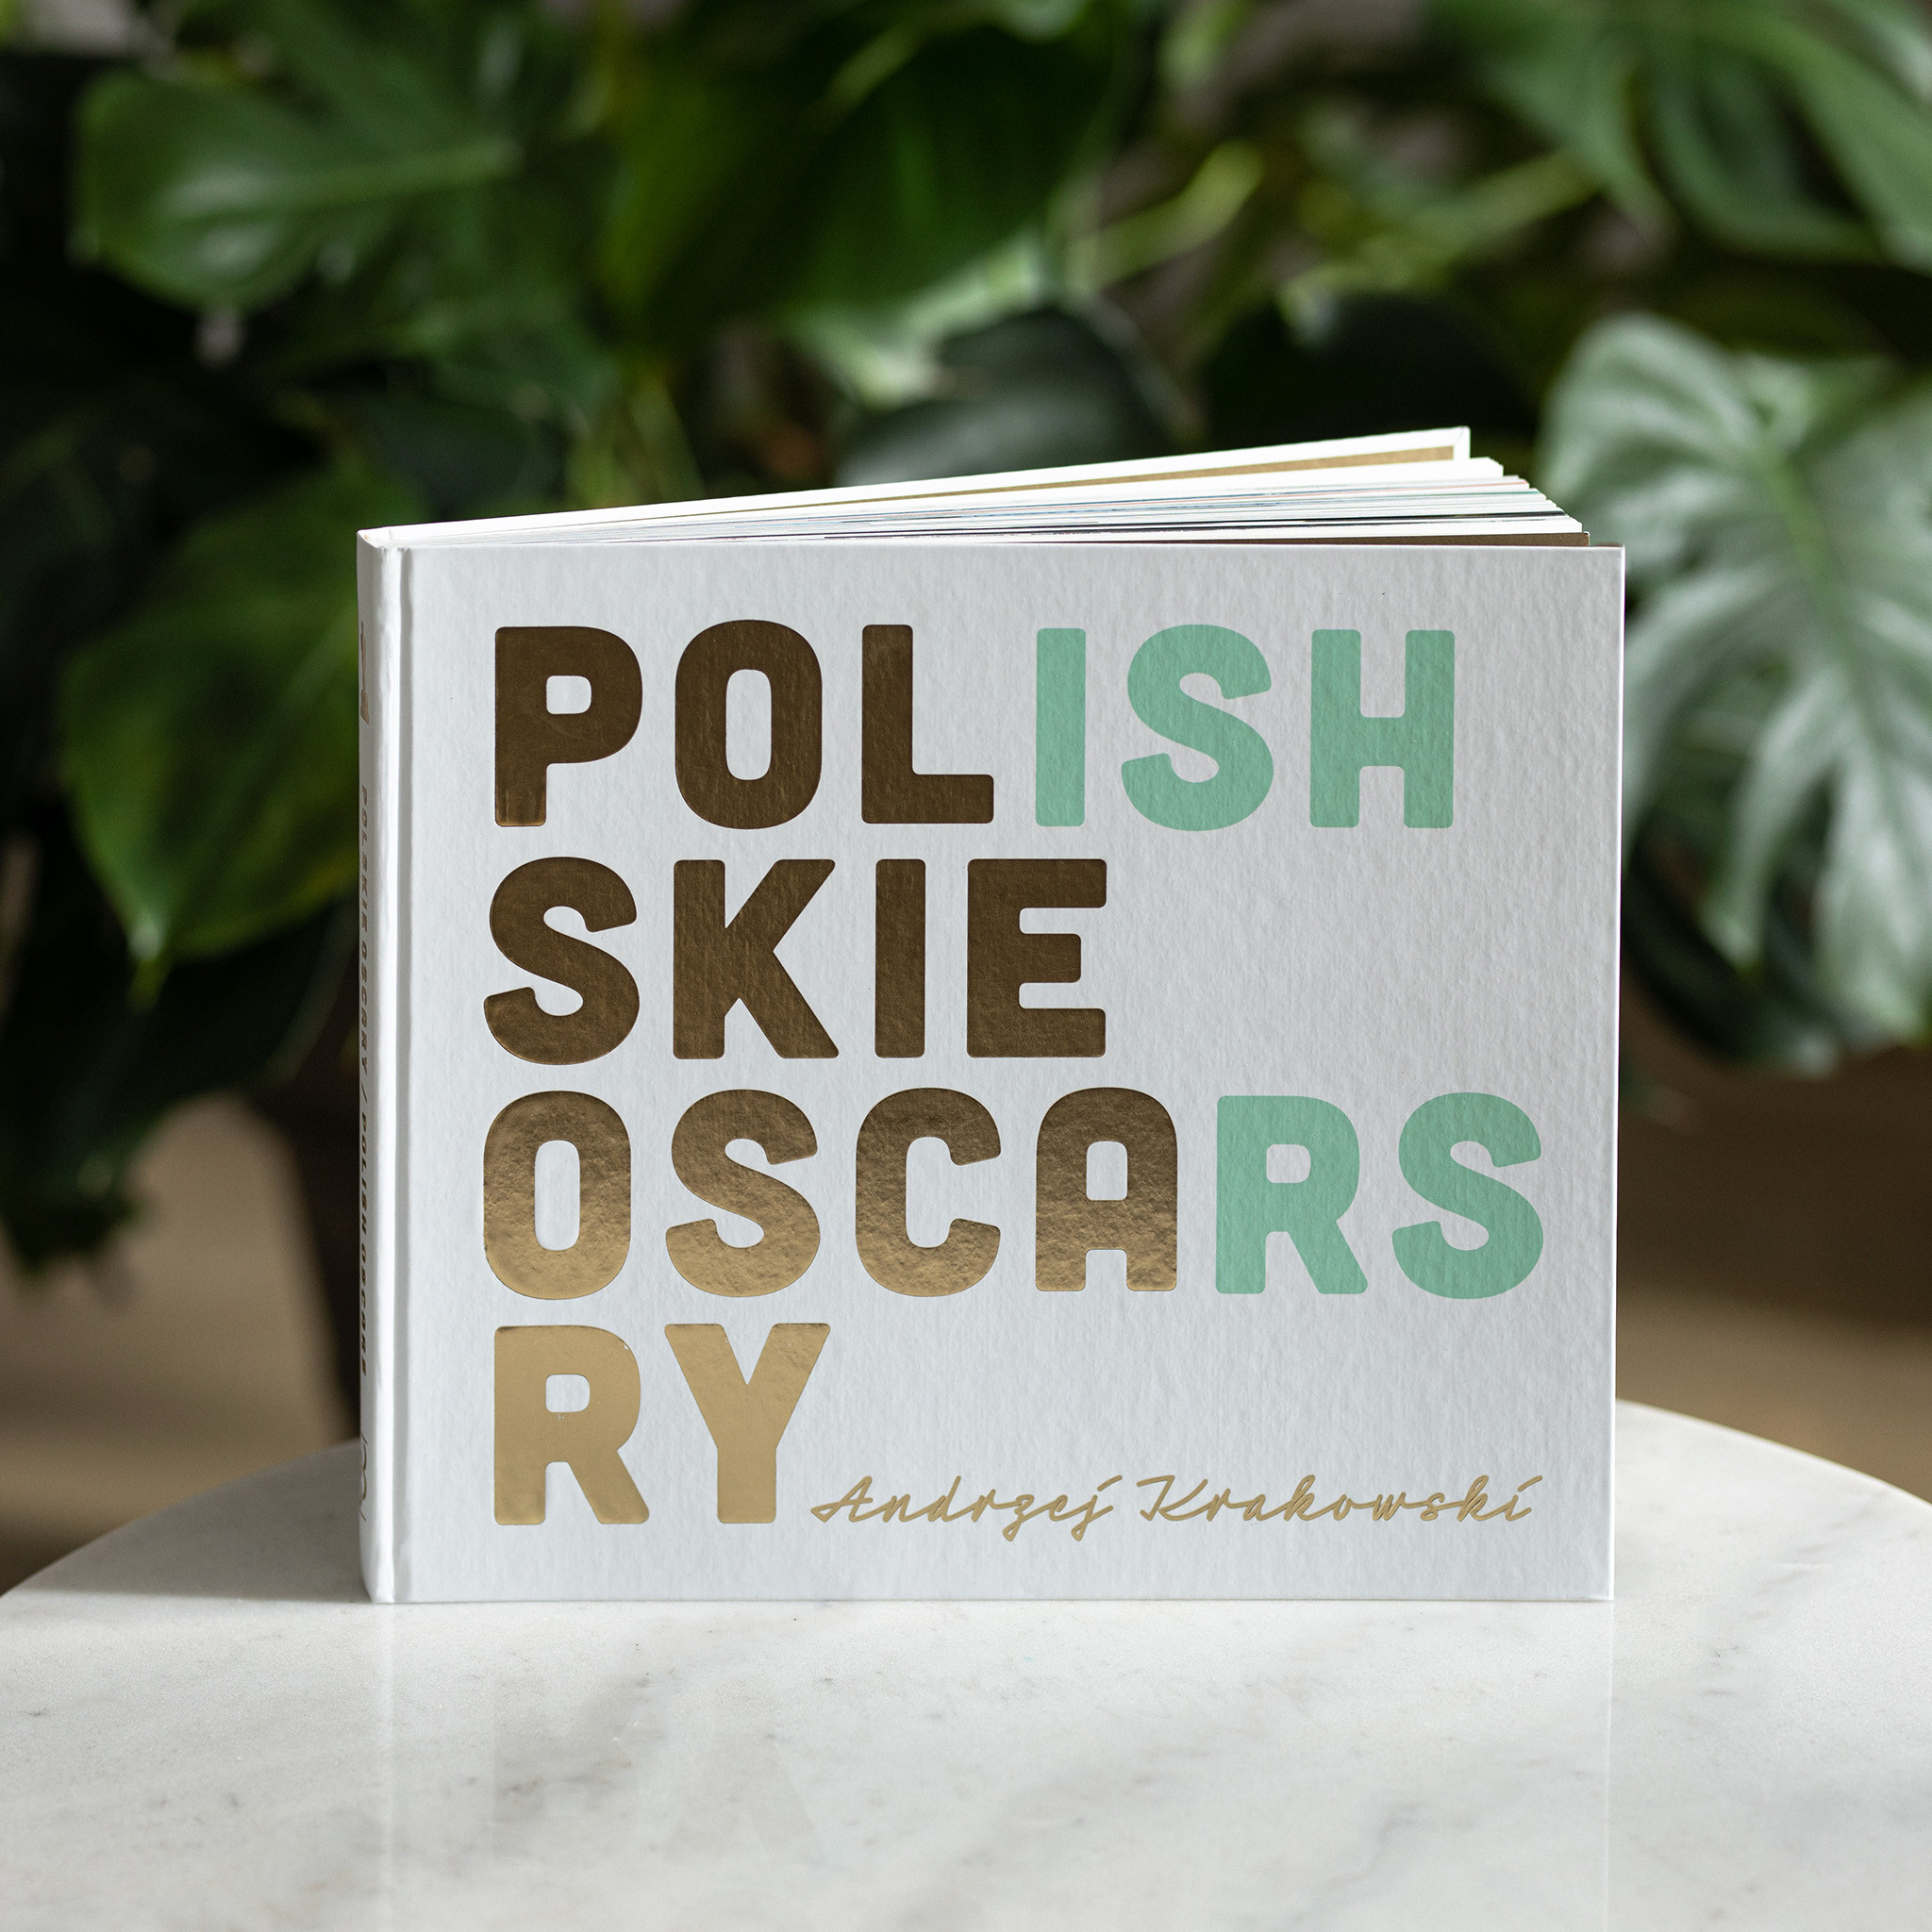 Na obrazie widzimy zdjęcie okładki książki Andrzeja Krakowskiego "Polskie Oskary/Polish Oscars"